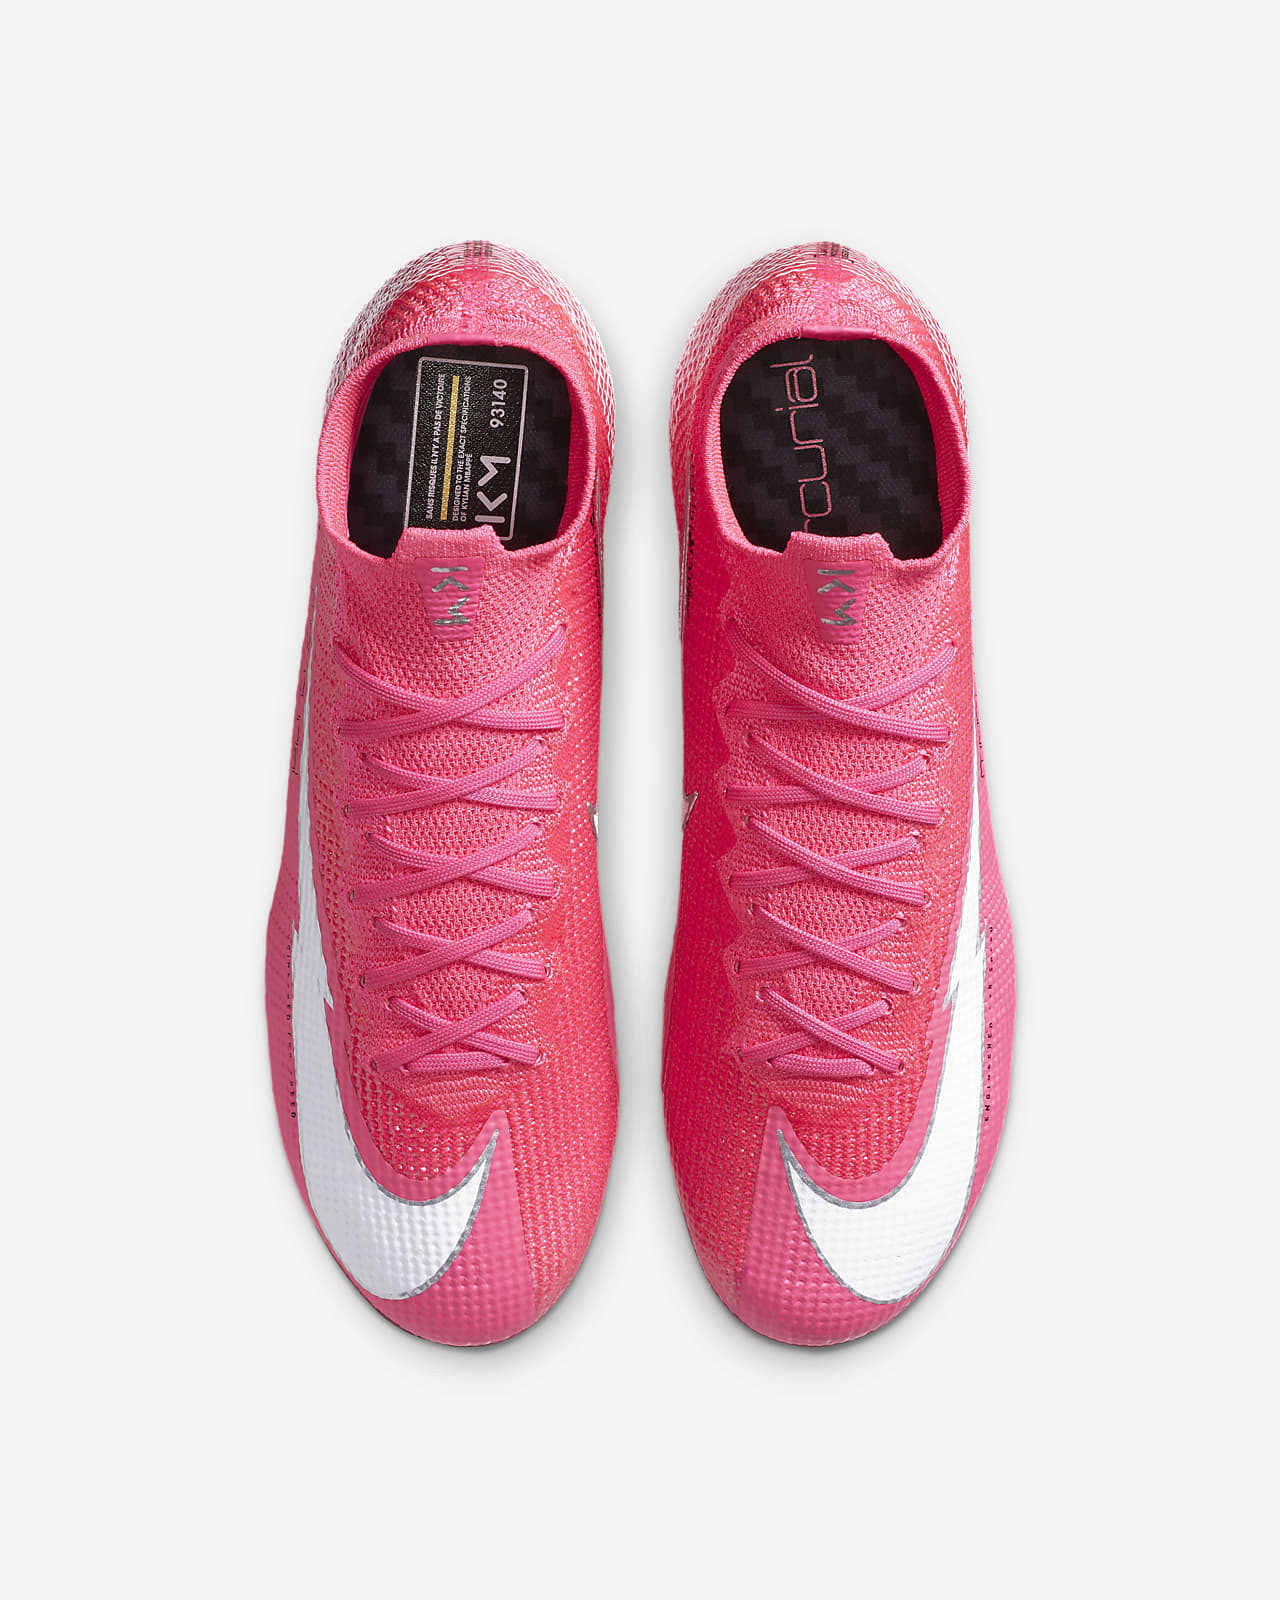 botas de futbol nike mercurial rosas